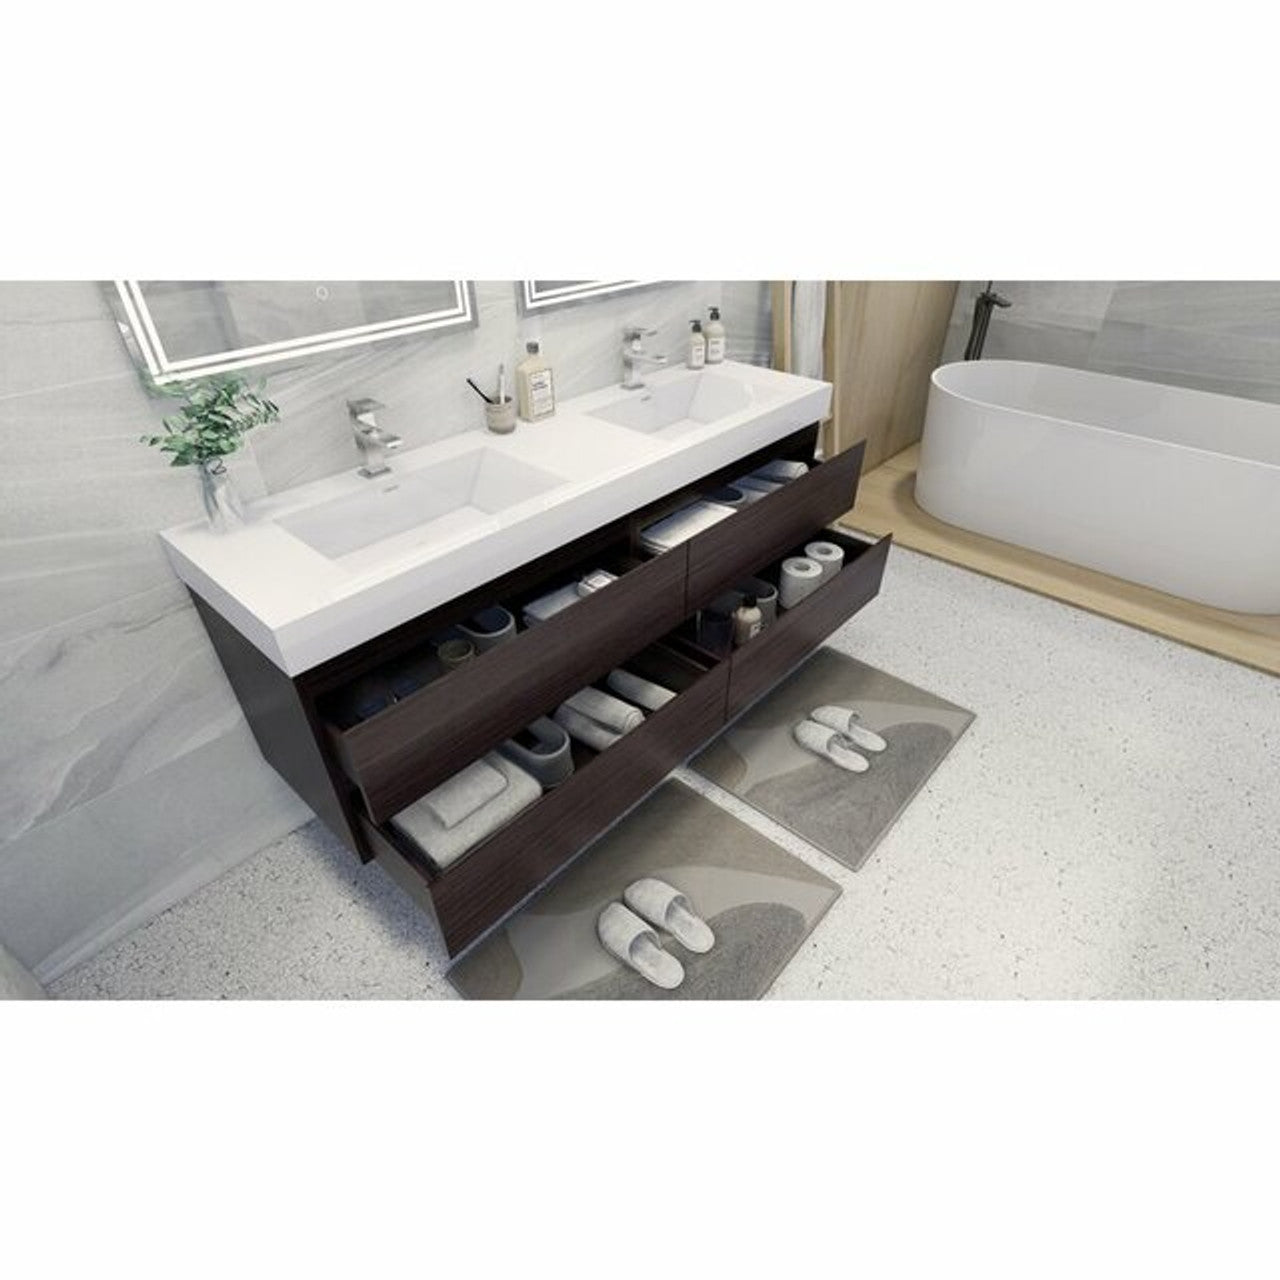 Angel 72" Wall Mounted Bathroom Vanity with Reeinforced Double Acrylic Sink